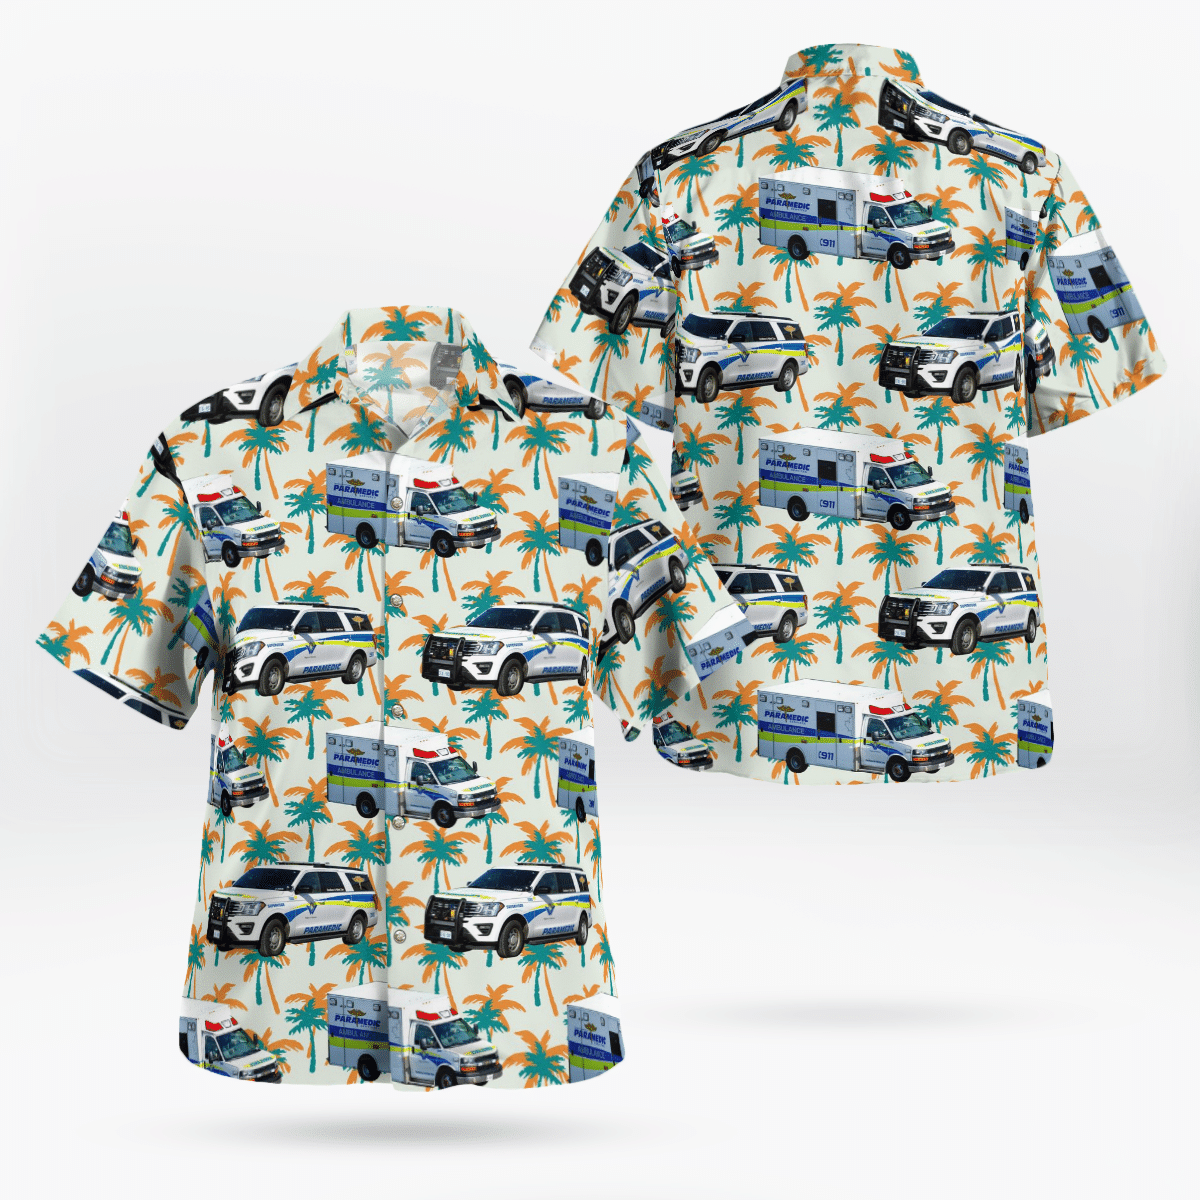 You won't regret buying these Aloha Shirt 190